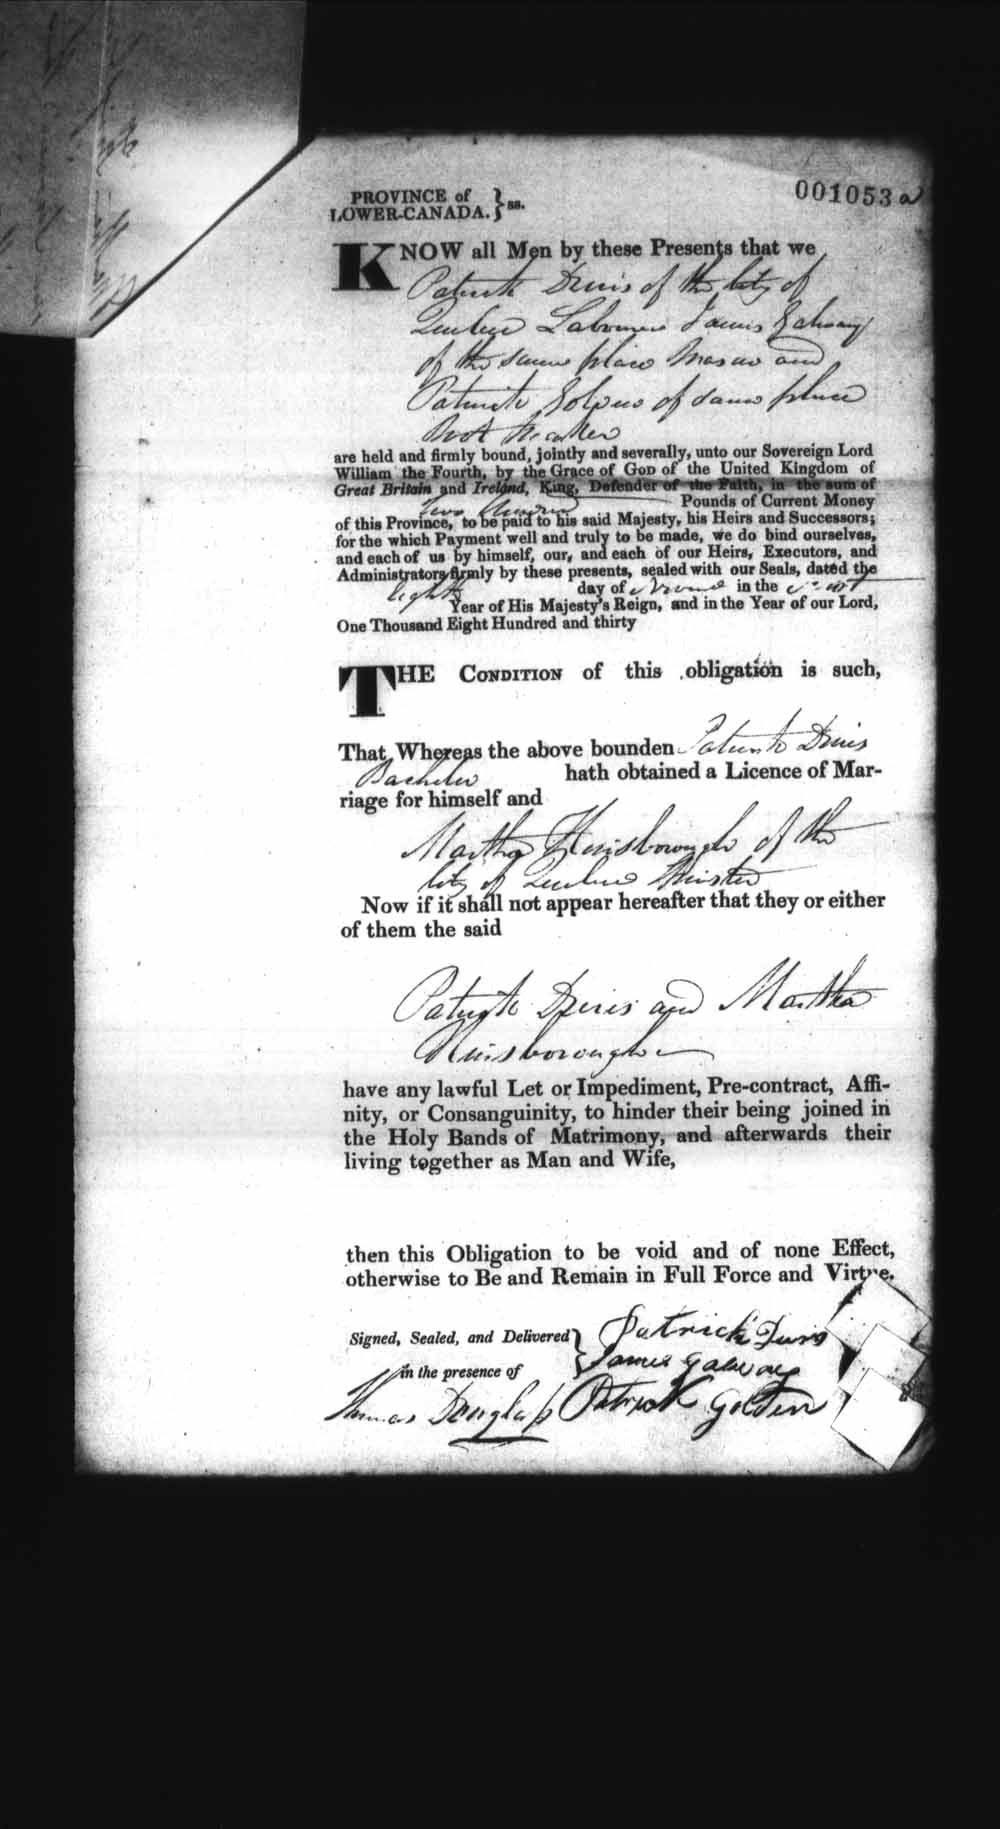 Page numérisé de Cautionnements de mariages pour le Haut-Canada et le Bas-Canada (1779-1865) pour l'image numéro: e008237179